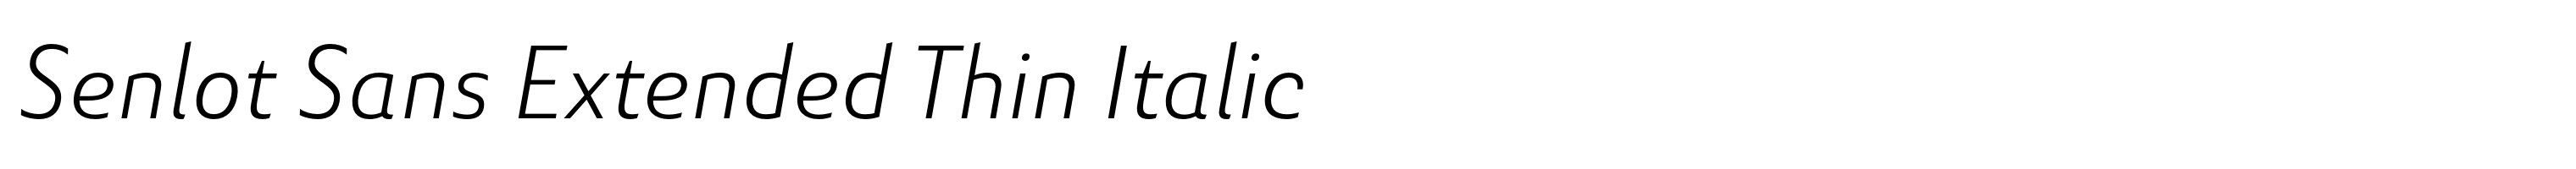 Senlot Sans Extended Thin Italic